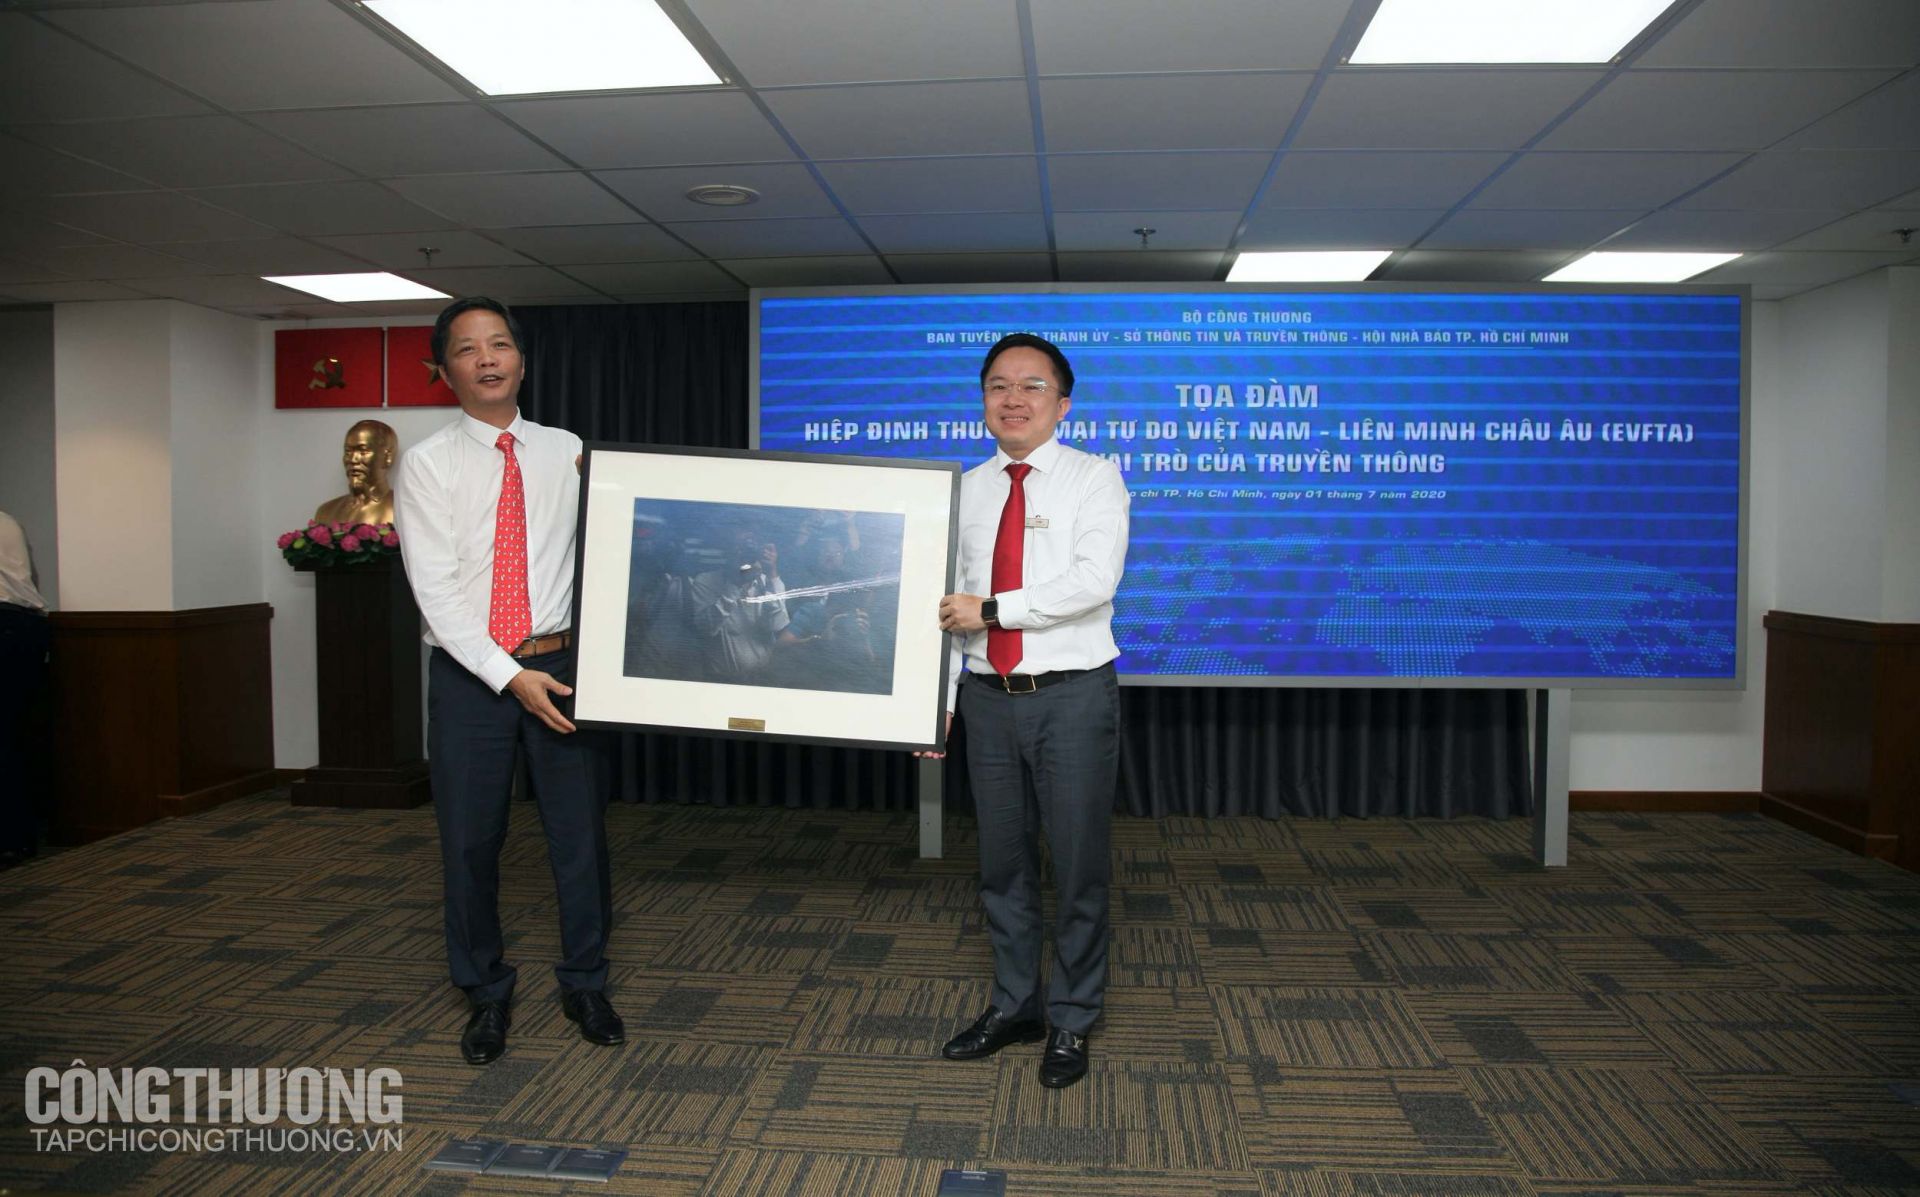 Bộ Trưởng Bộ Công Thương Trần Tuấn Anh tặng quà lưu niệm cho ông Từ Lương - Phó Giám đốc Sở Thông tin và Truyền thông TP. HCM